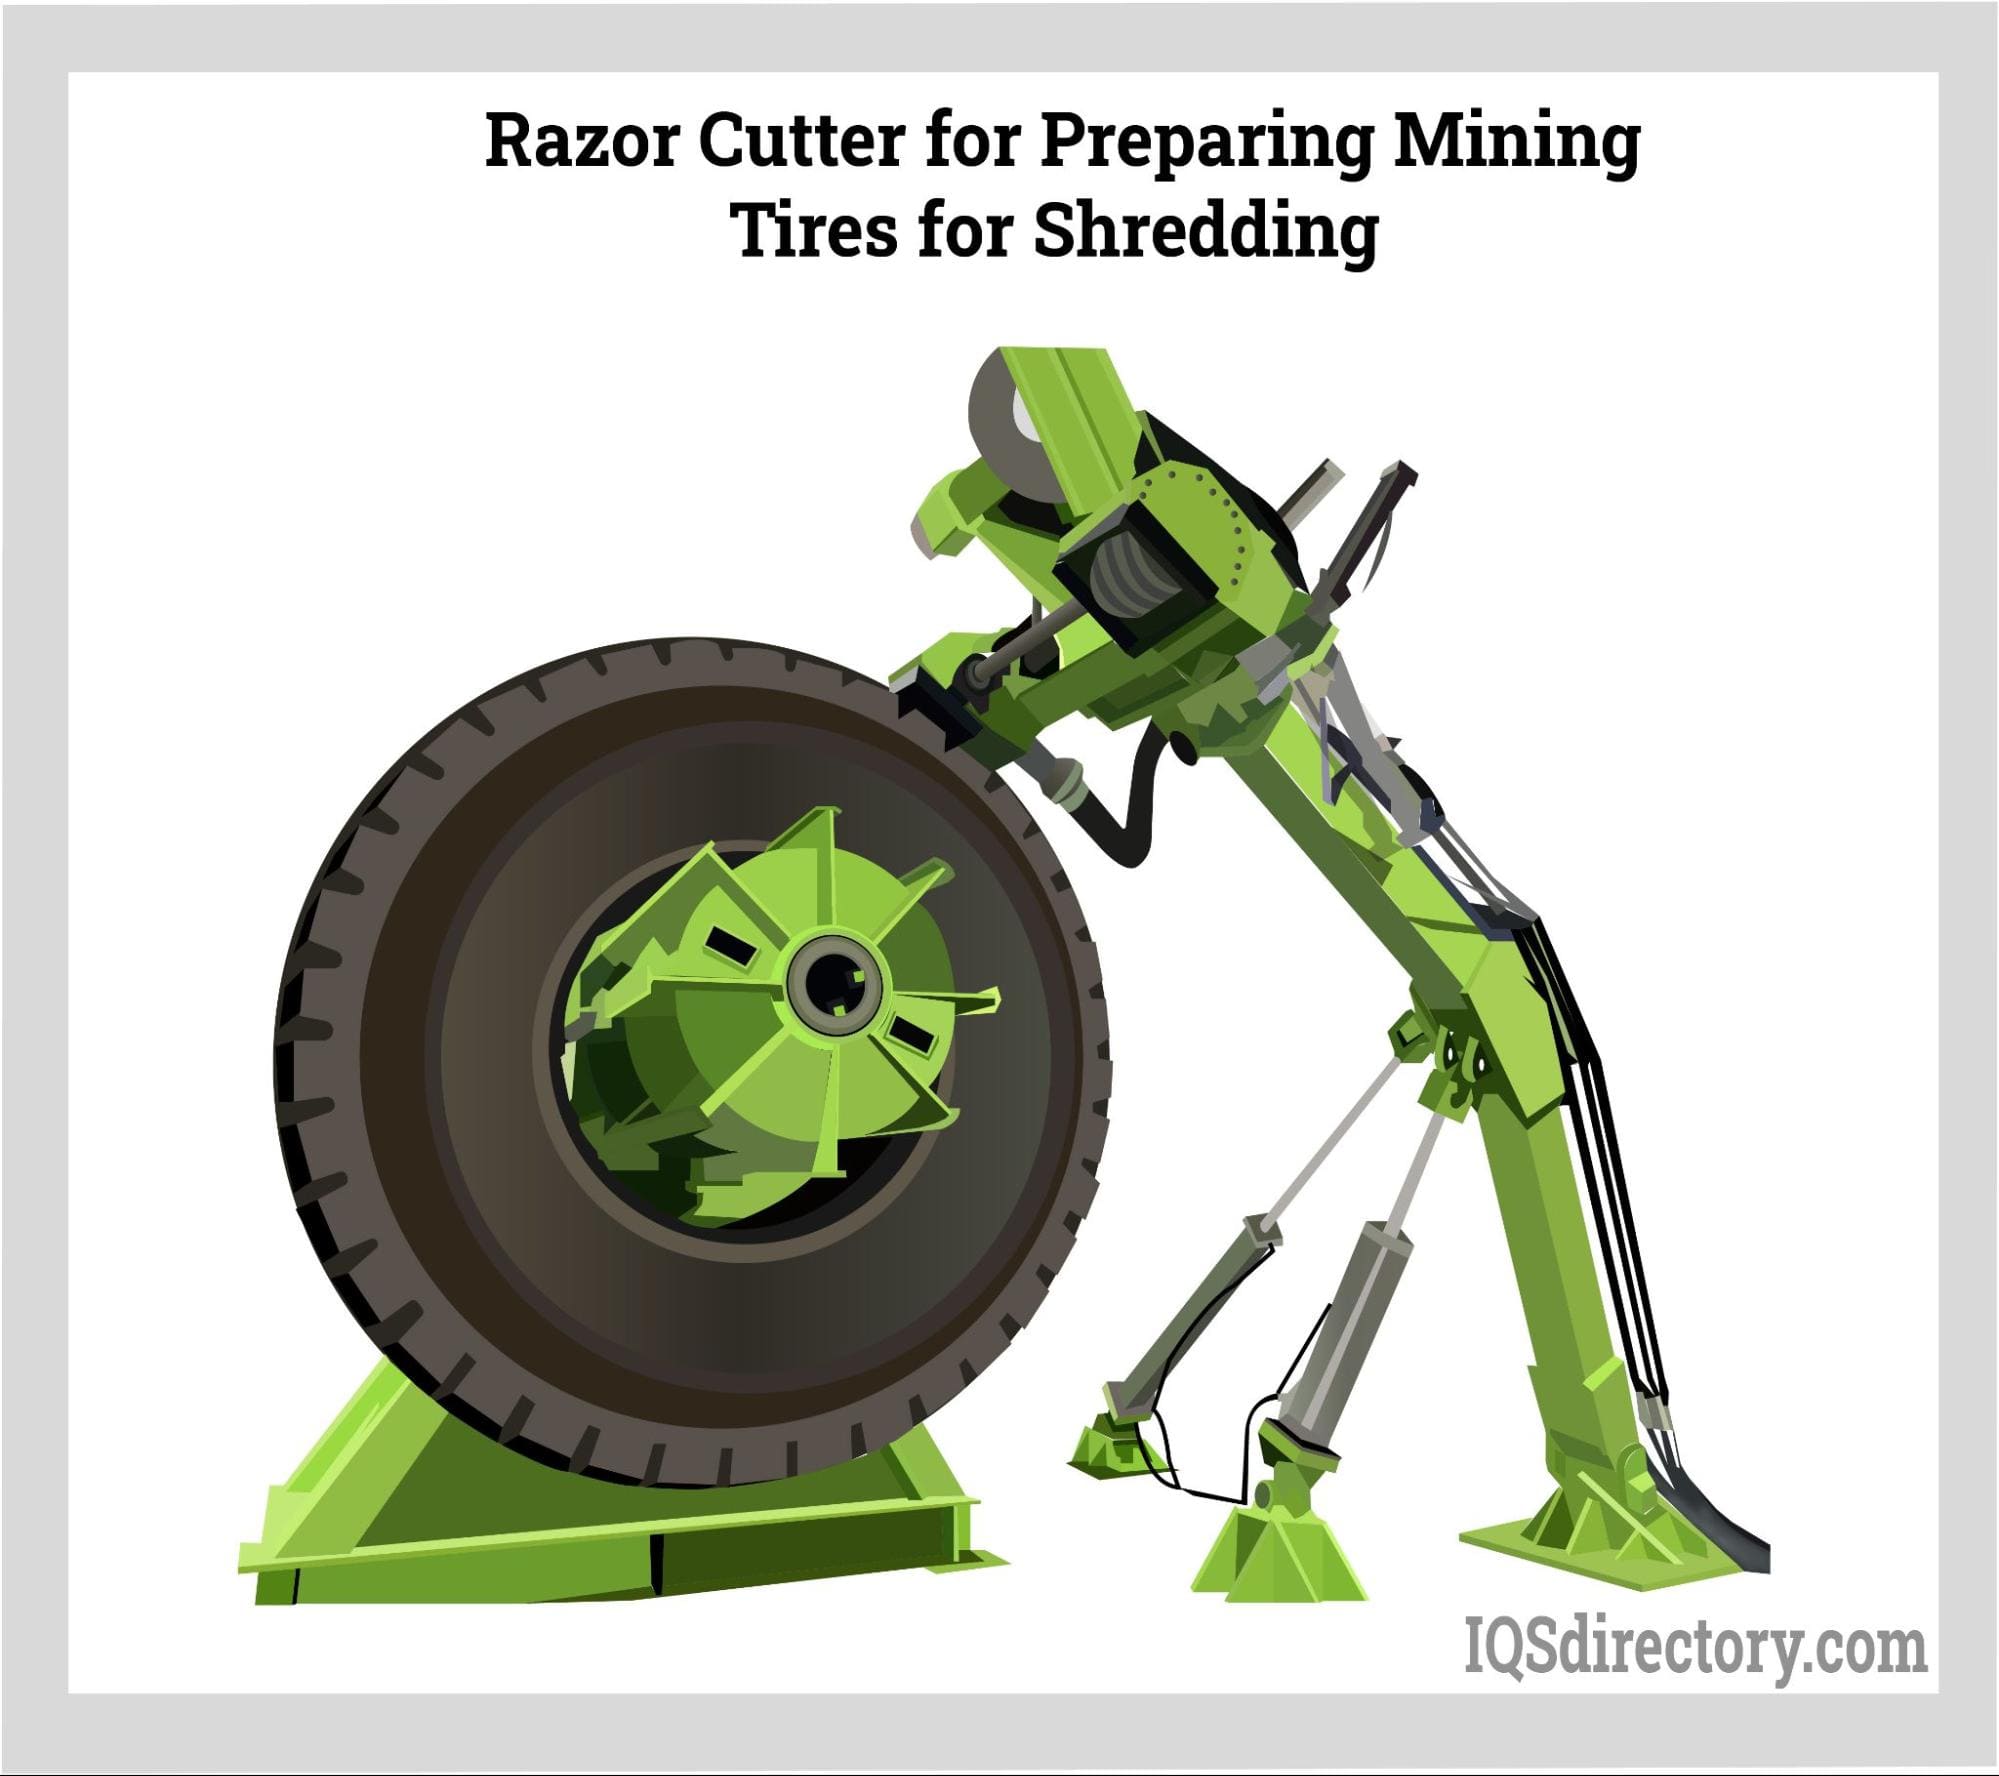 Razor Cutter for Preparing Mining Tires for Shredding